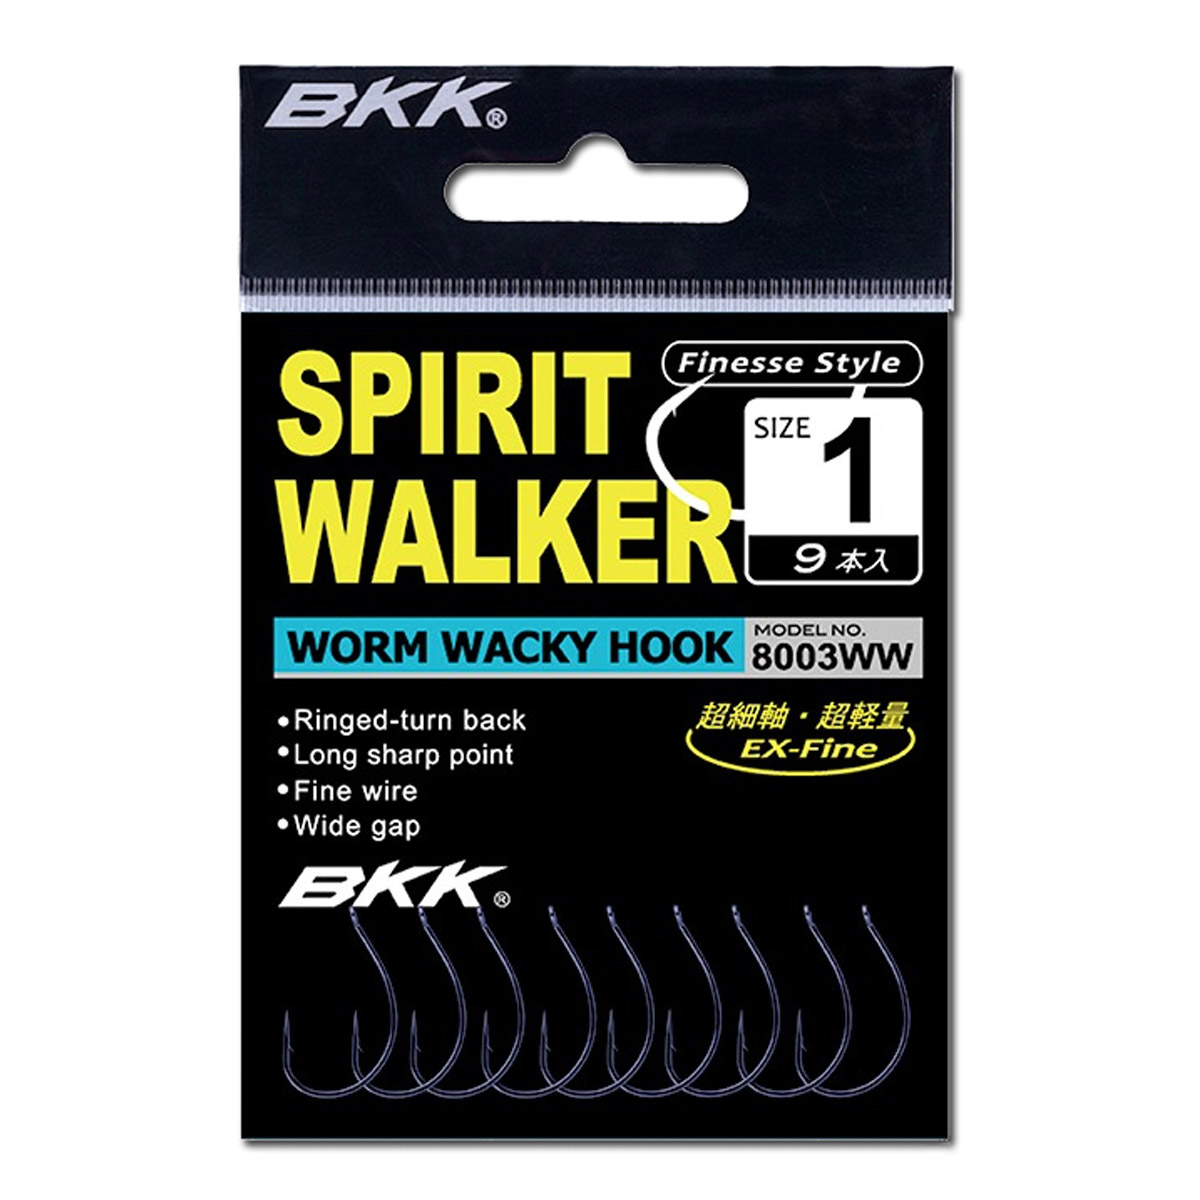 Bkk Spirit Walker Worm Wacky Hooks